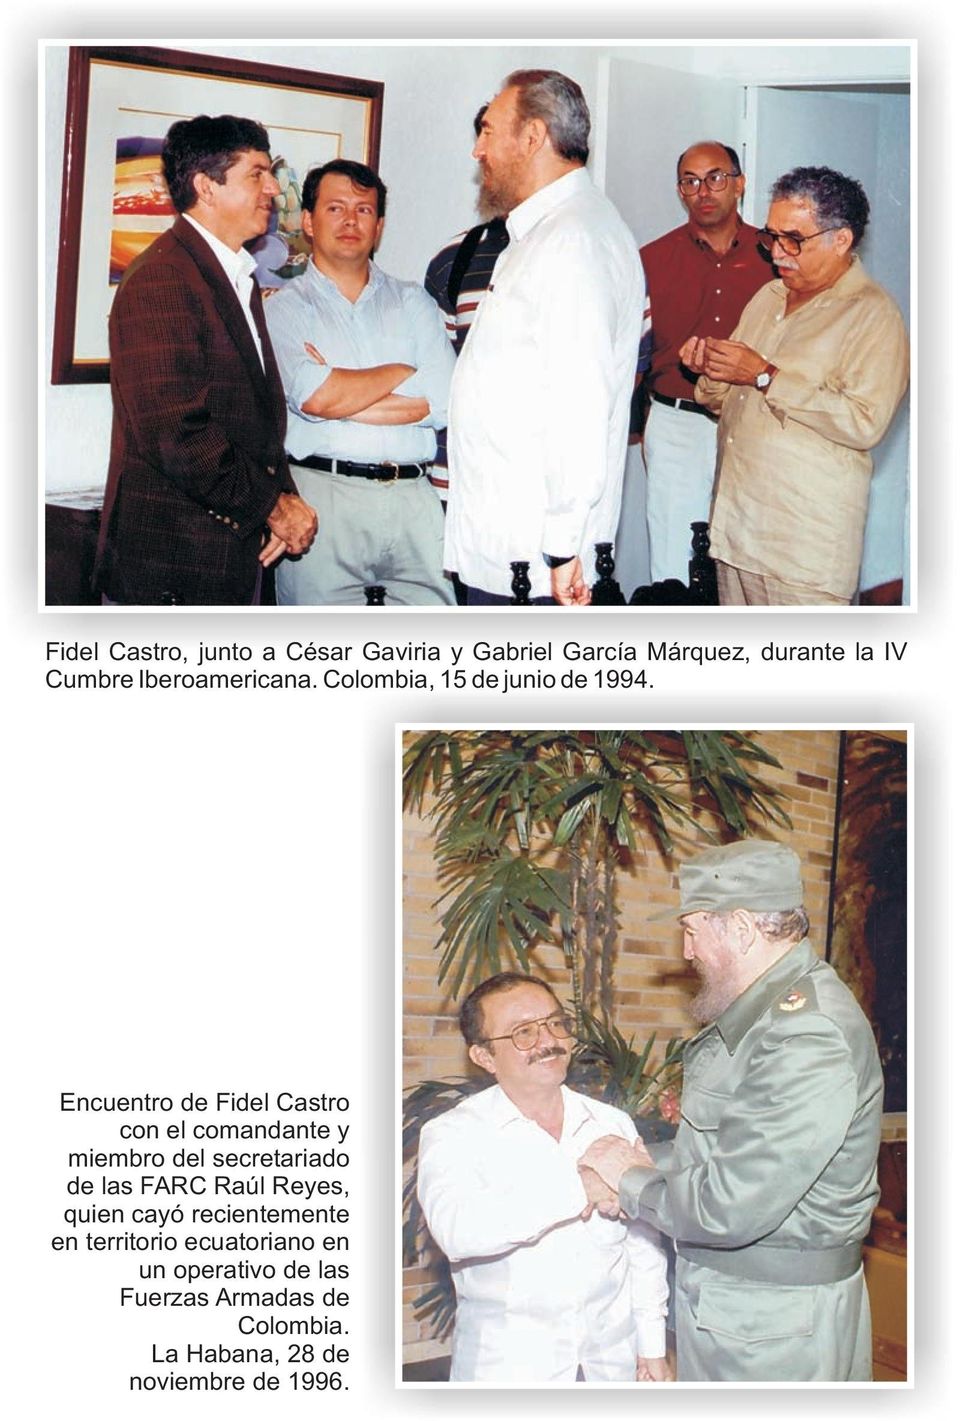 Encuentro de Fidel Castro con el comandante y miembro del secretariado de las FARC Raúl